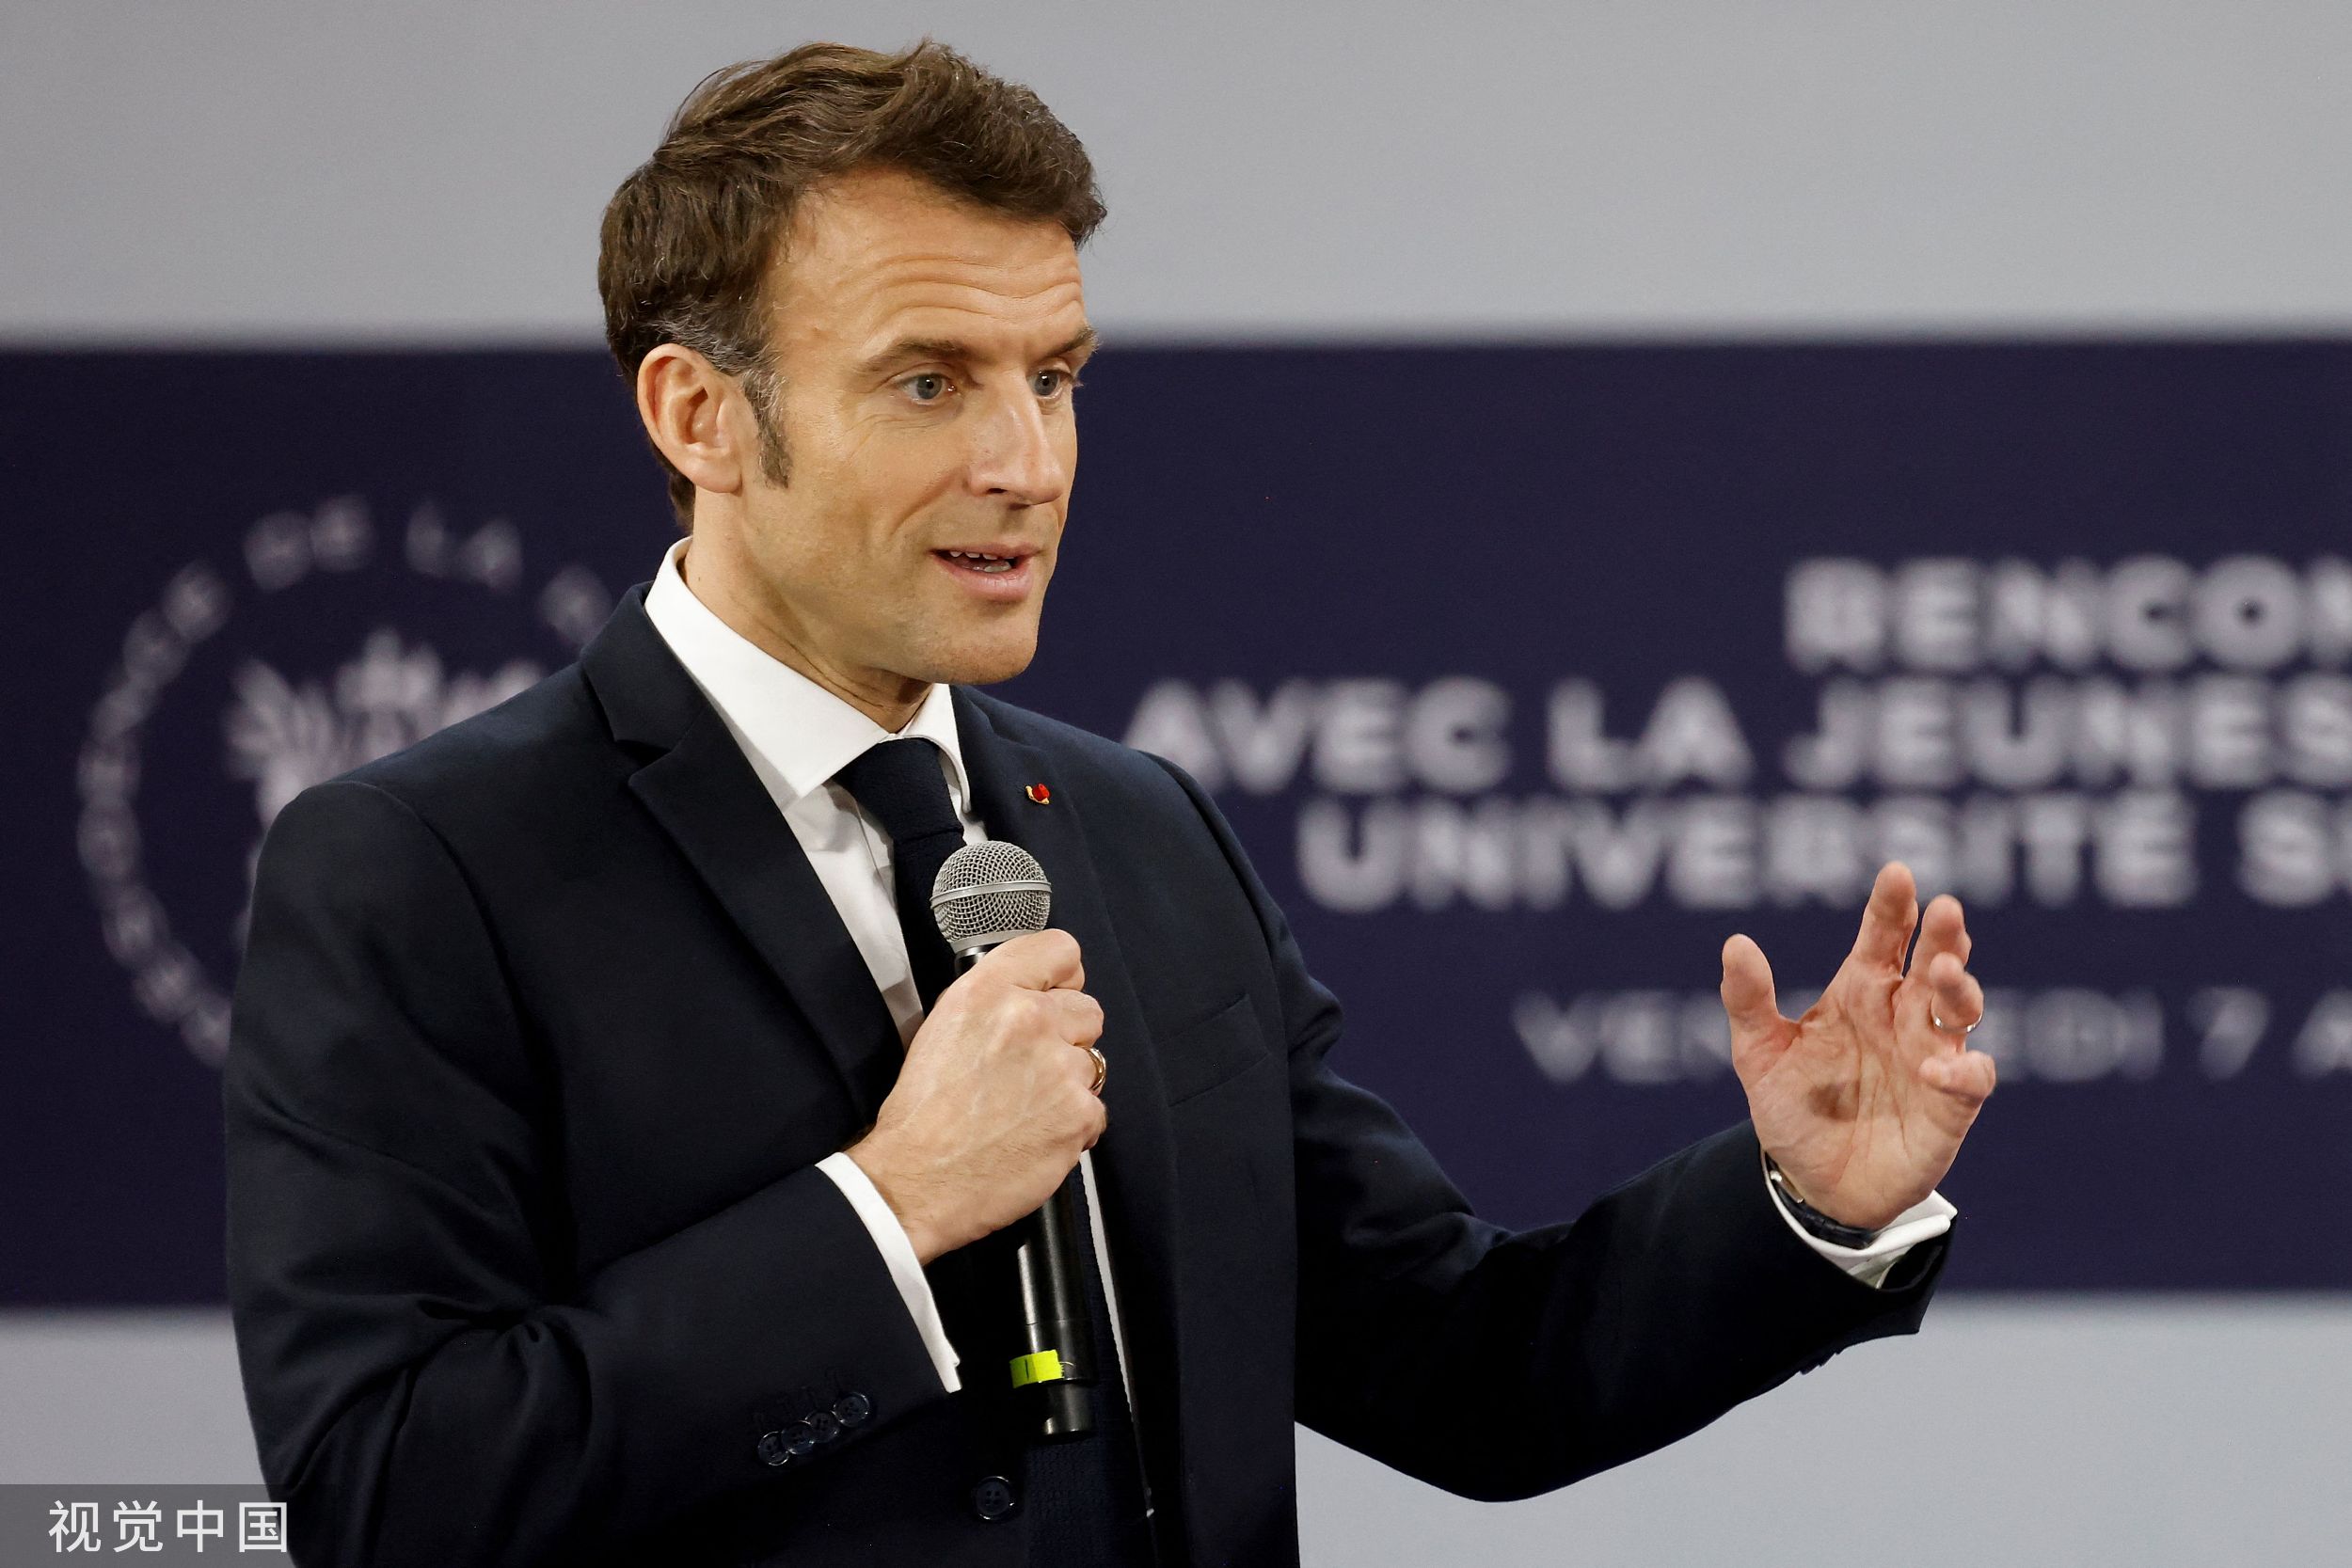 La ceremonia de investidura de Emmanuel Macron, en imágenes